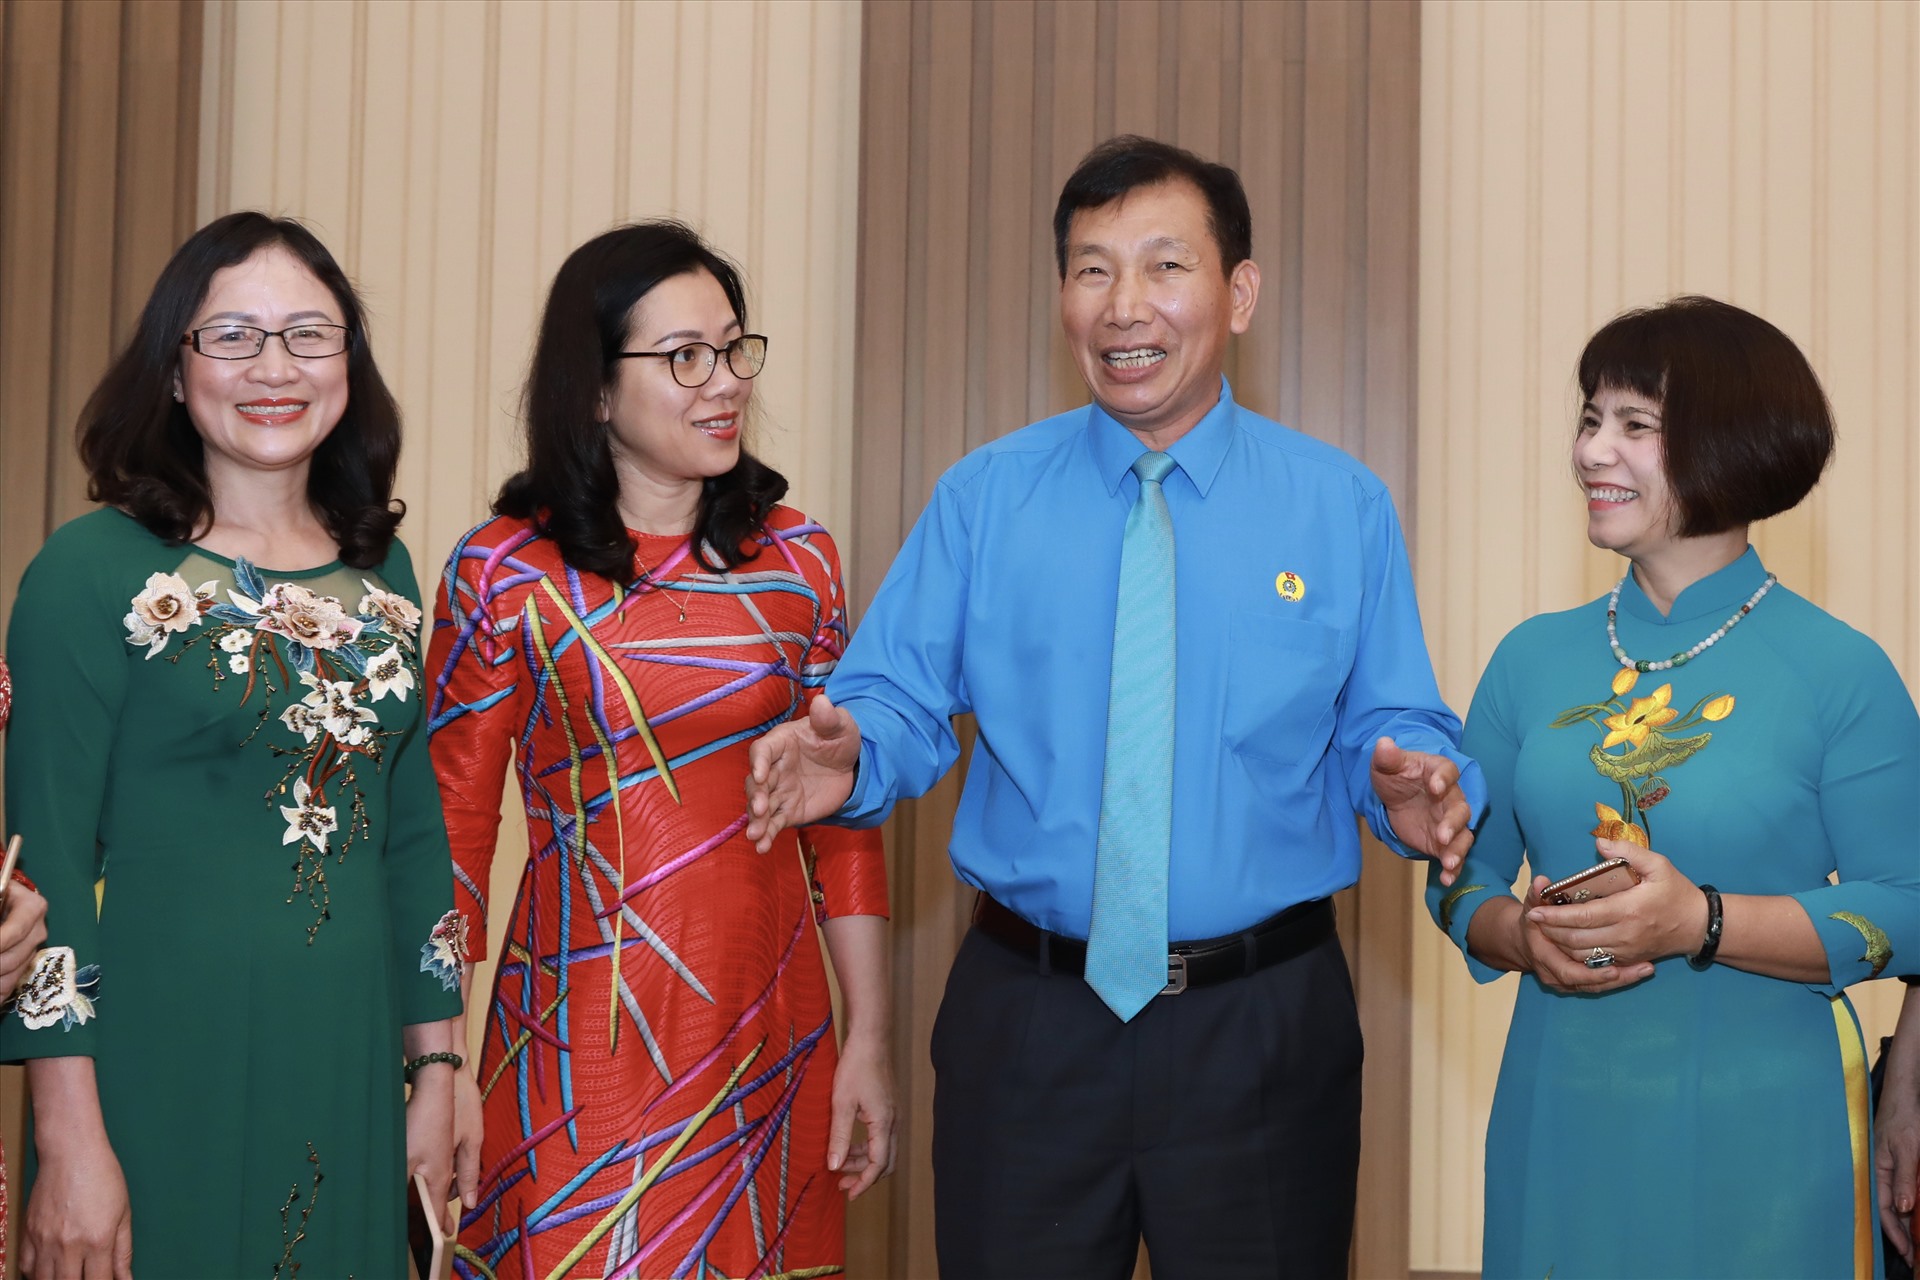 Đồng chí Vũ Tiến Dũng, Chủ tịch Công đoàn Công nghiệp Hoá chất Việt Nam giao lưu với các đại biểu nữ. Ảnh: Hải Nguyễn